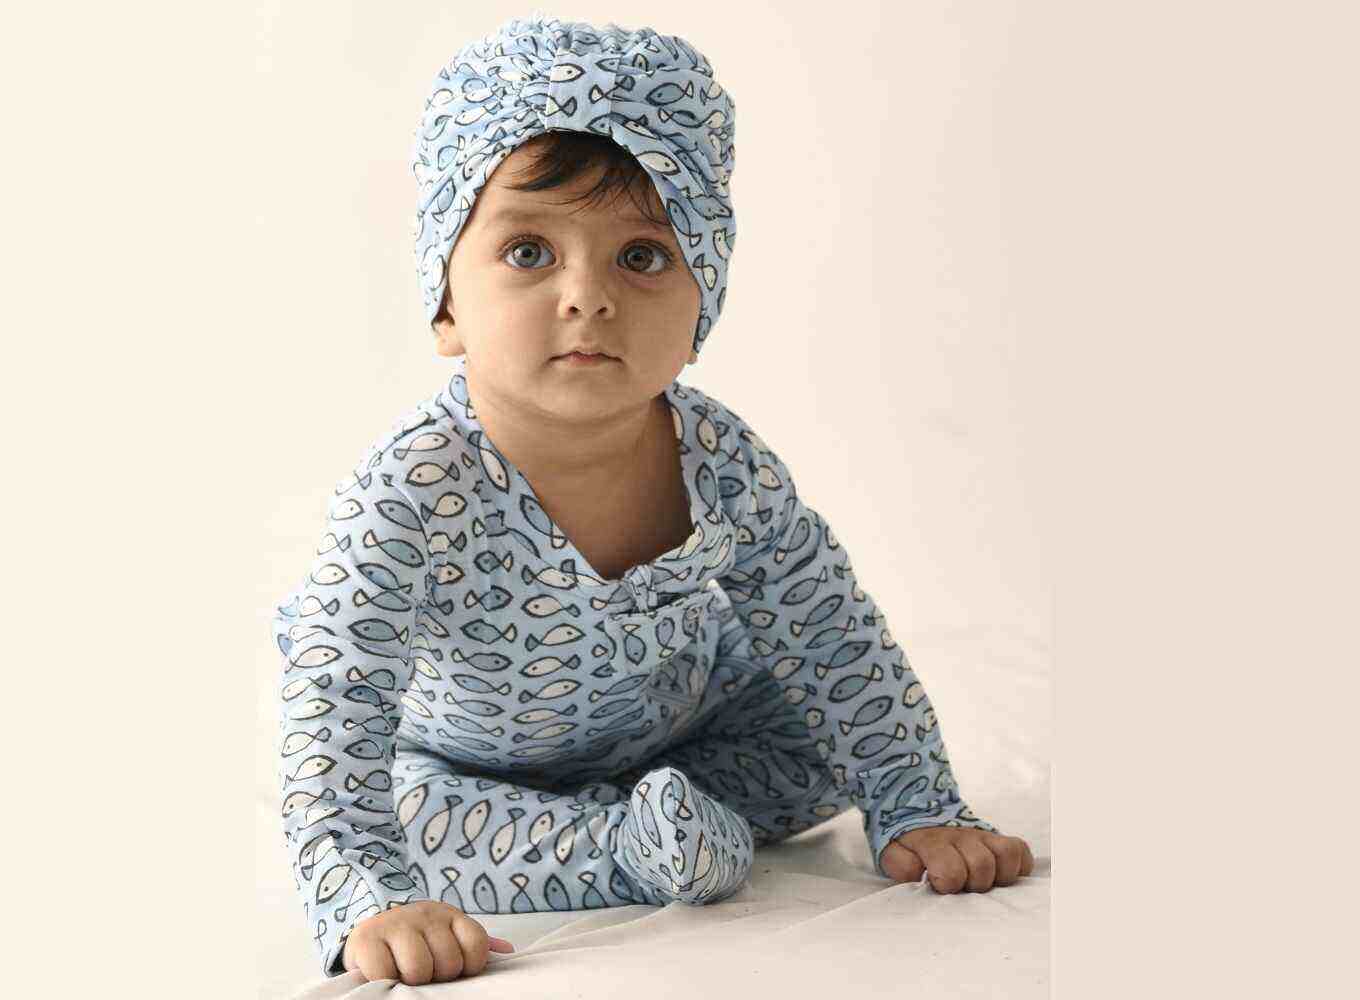 Infant Clothing